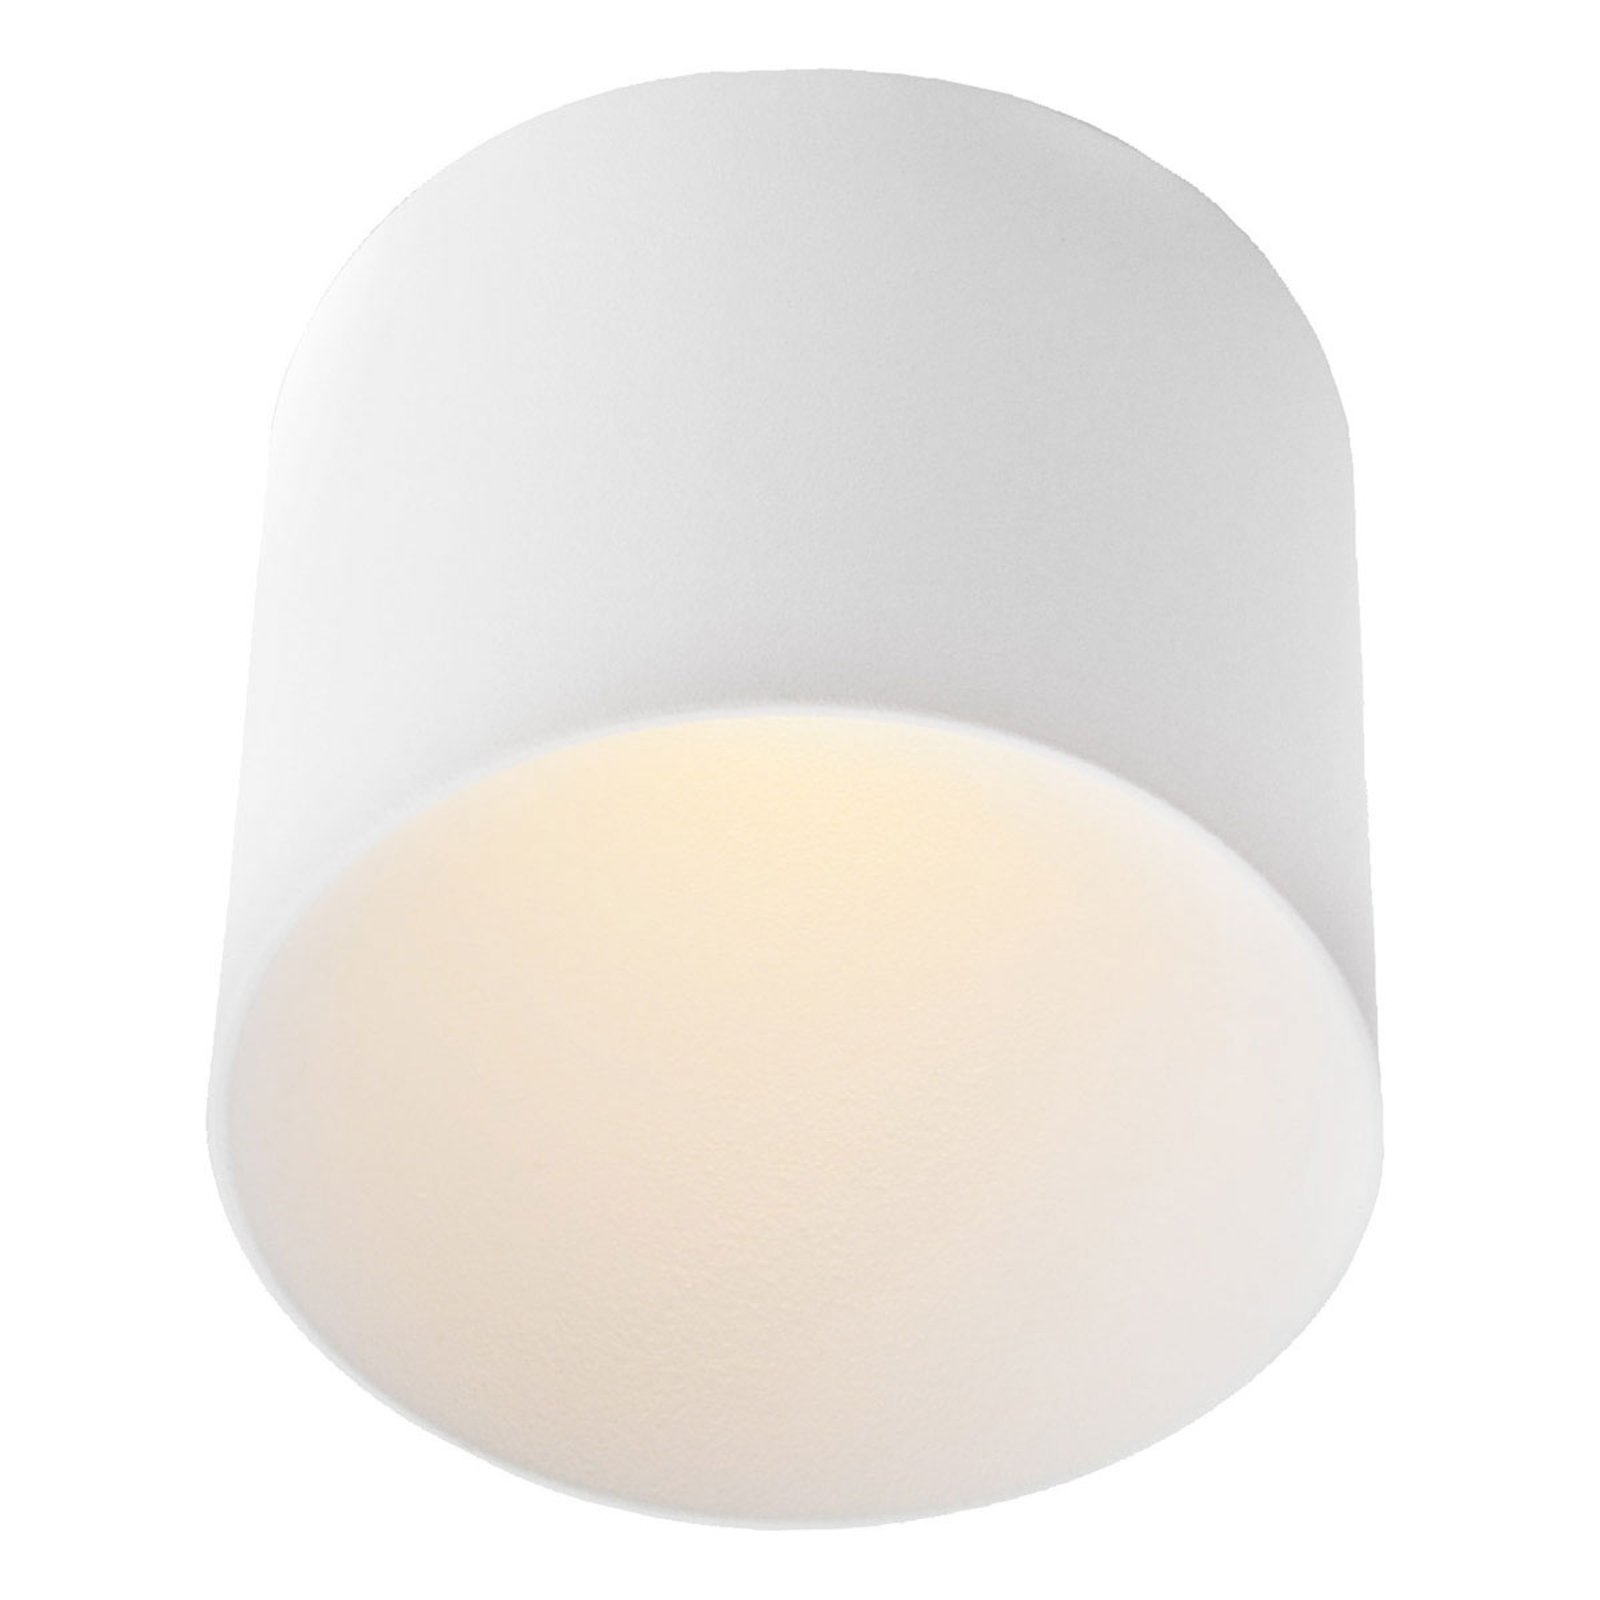 GF design Tubo lámpara empotrada IP54 blanca